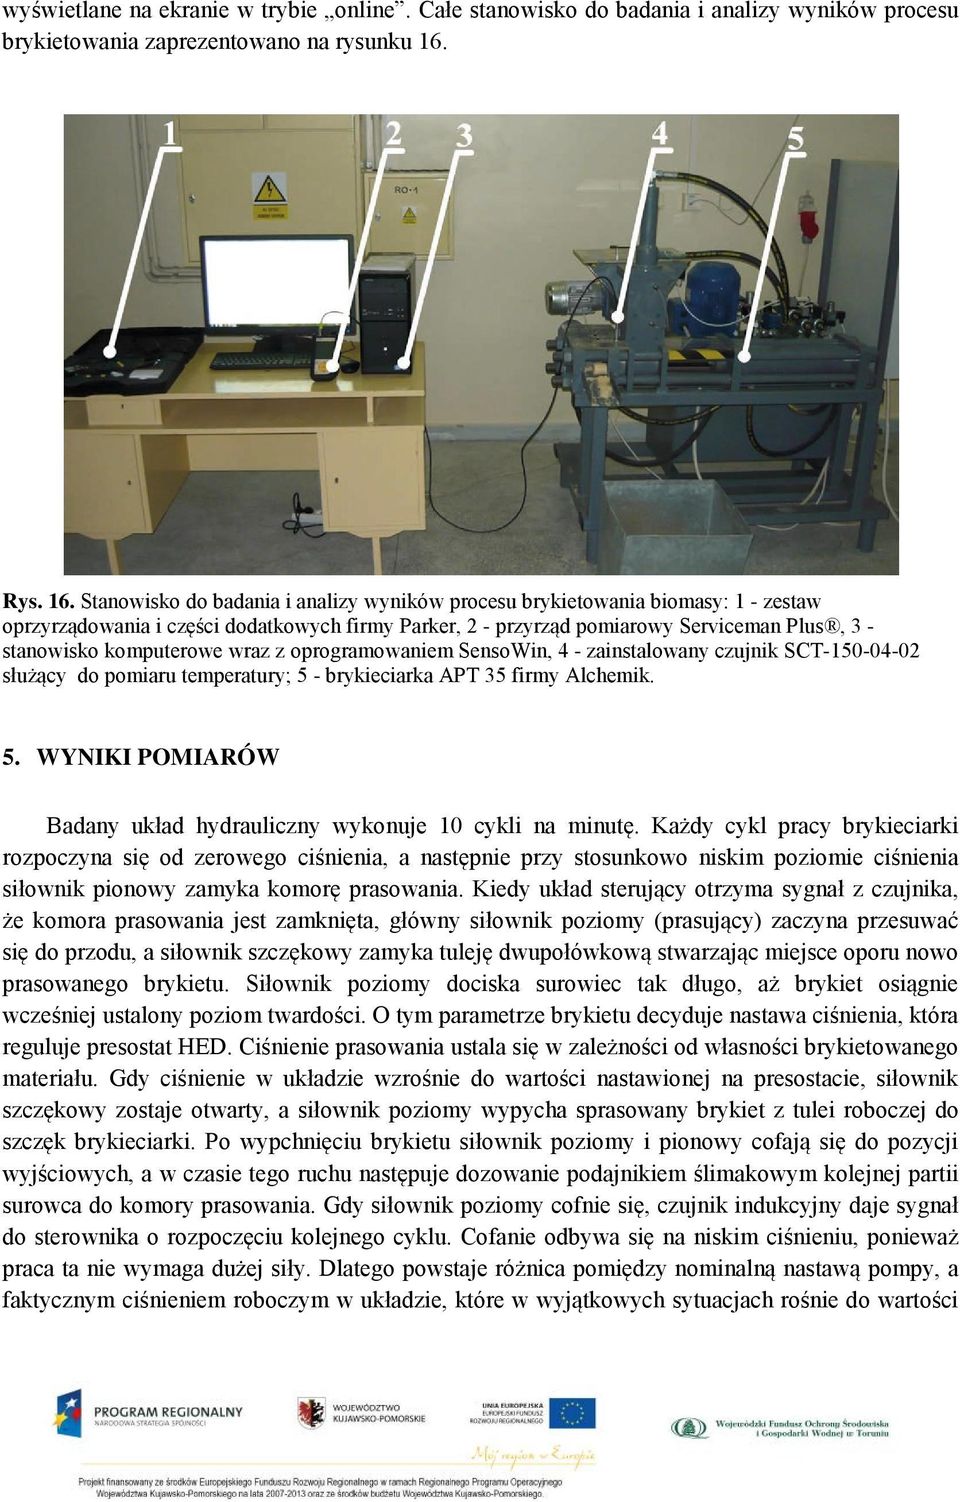 Stanowisko do badania i analizy wyników procesu brykietowania biomasy: 1 - zestaw oprzyrządowania i części dodatkowych firmy Parker, 2 - przyrząd pomiarowy Serviceman Plus, 3 - stanowisko komputerowe